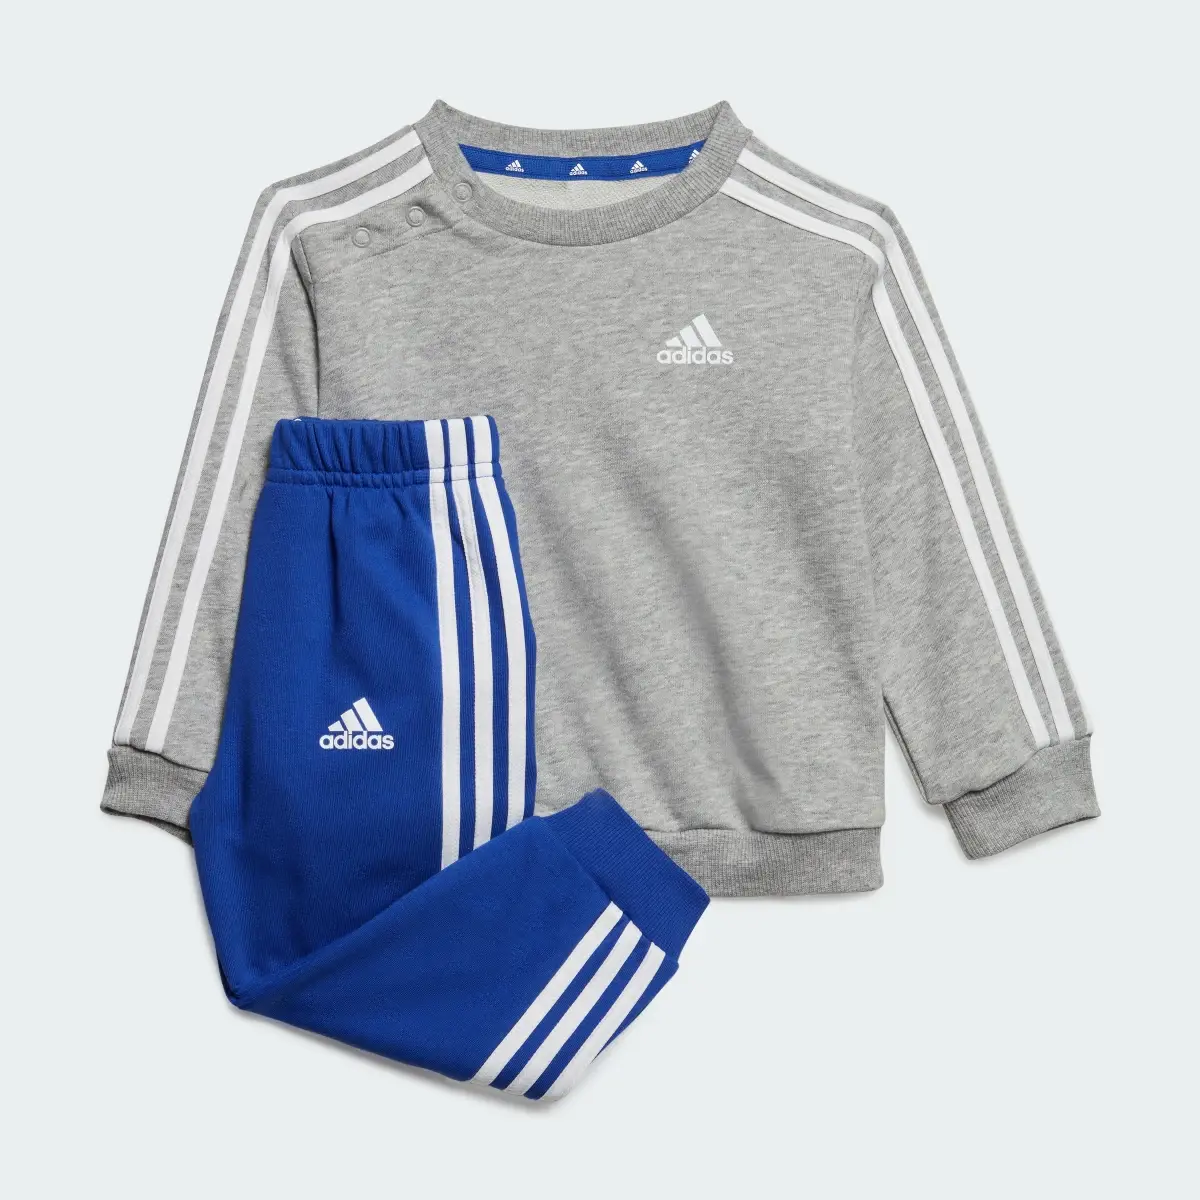 Adidas Conjunto 3-Stripes Essentials – Criança. 2